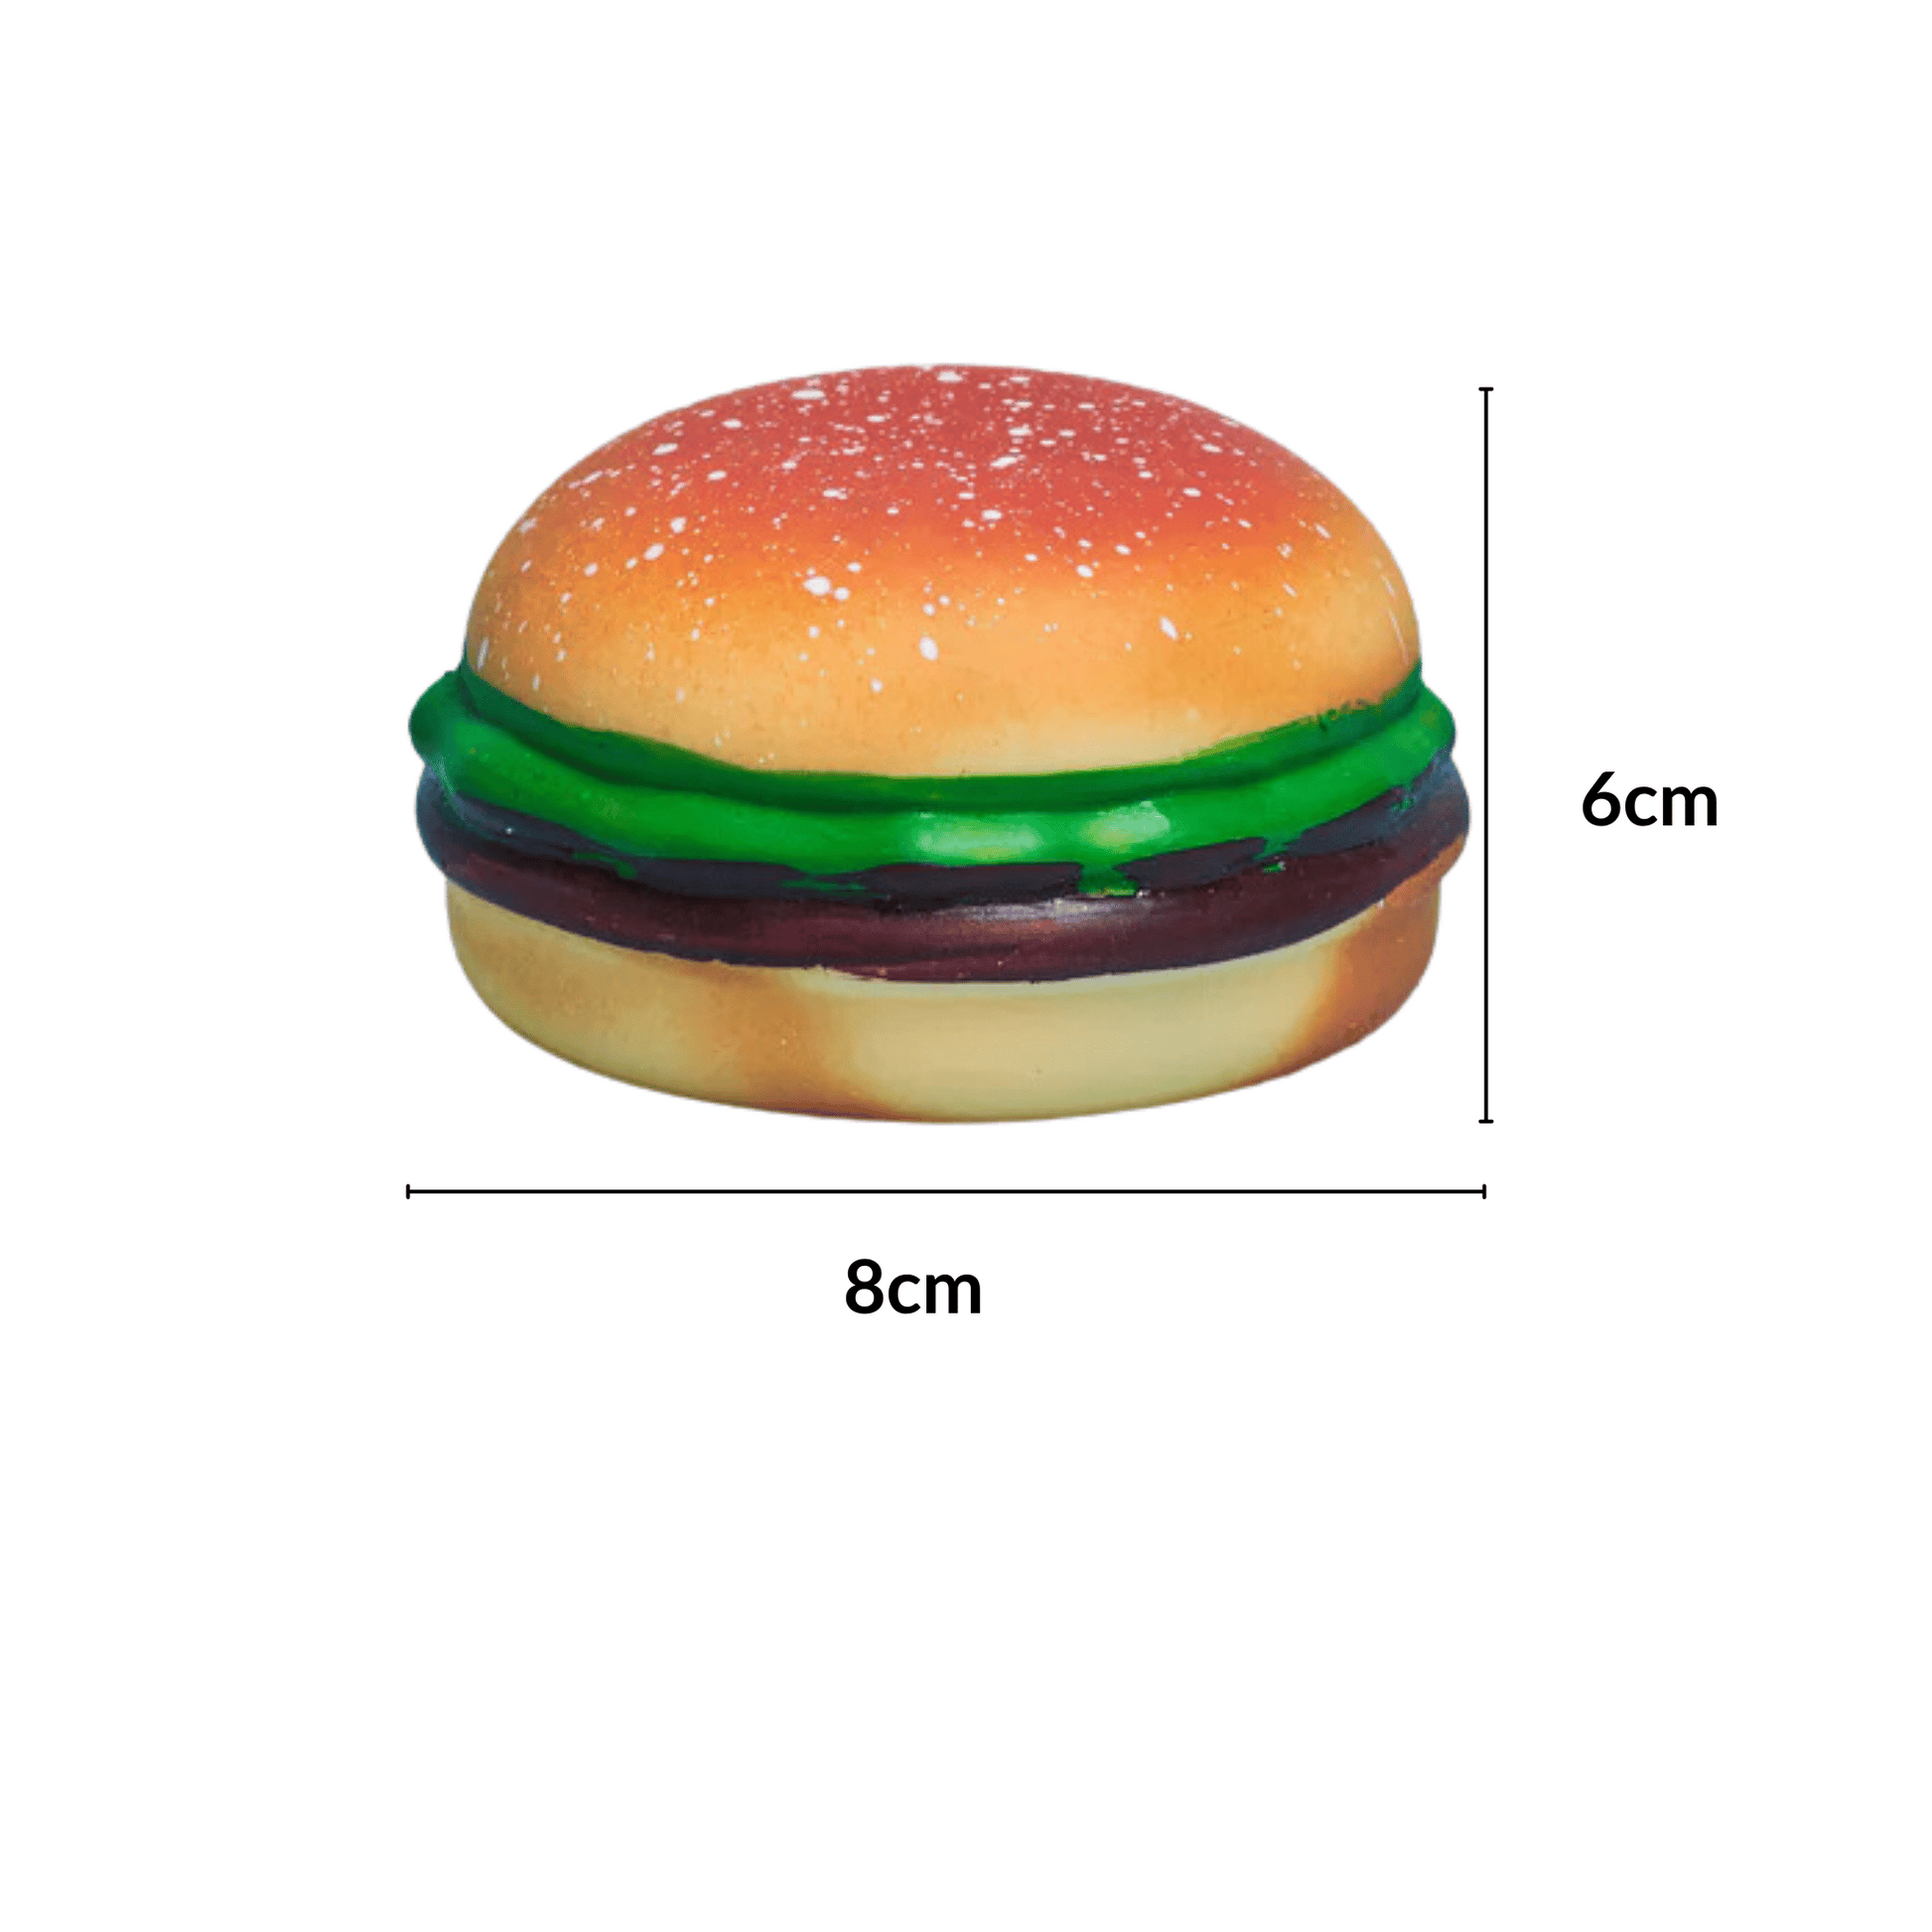 Squishy Hamburger Stress Ball size